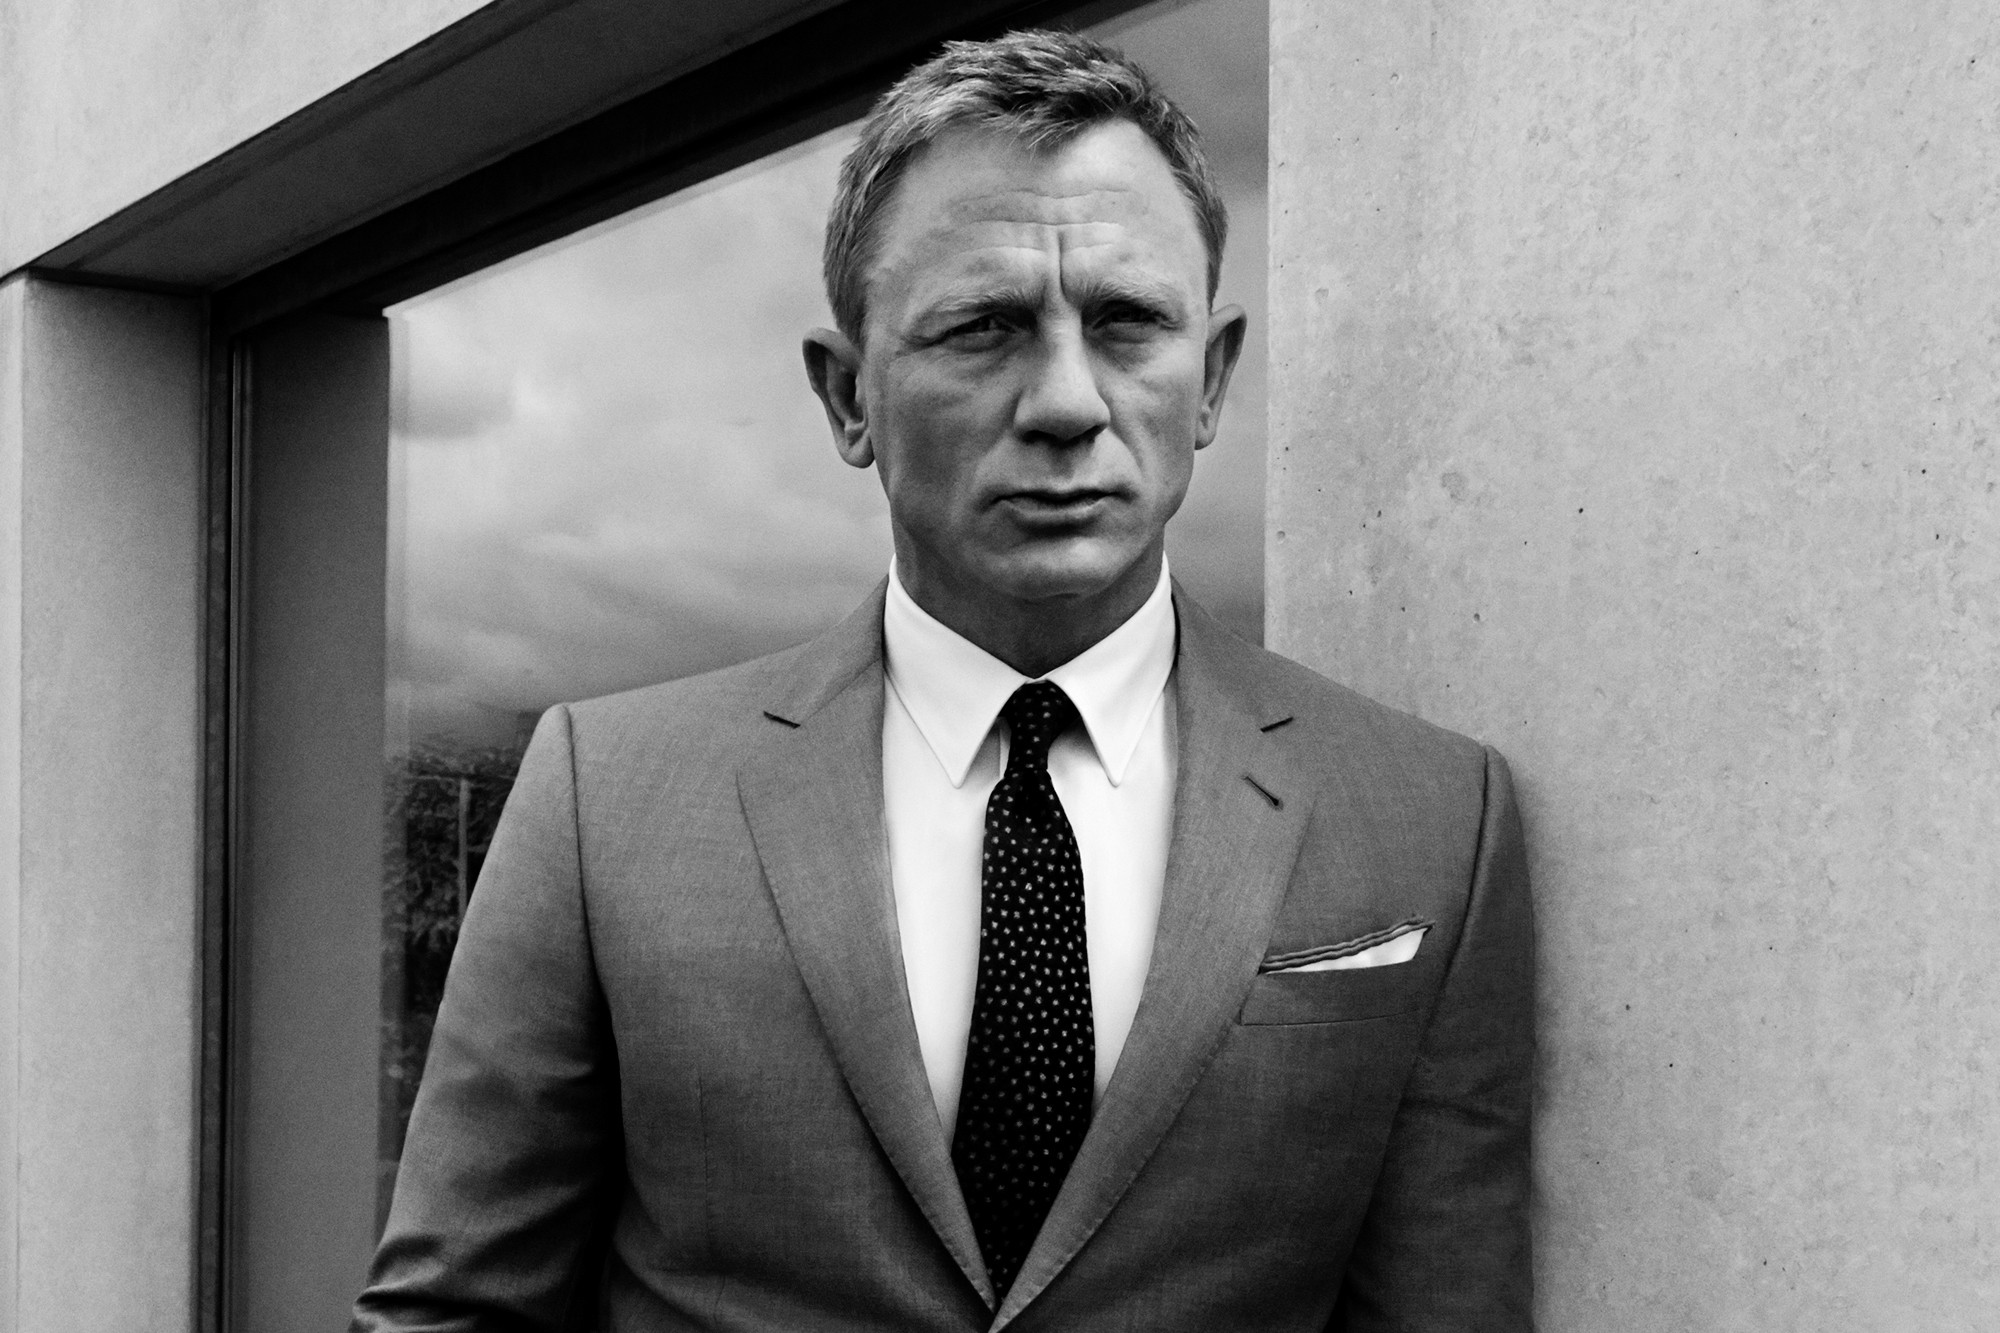 People 2000x1333 James Bond Daniel Craig men actor monochrome suits tie